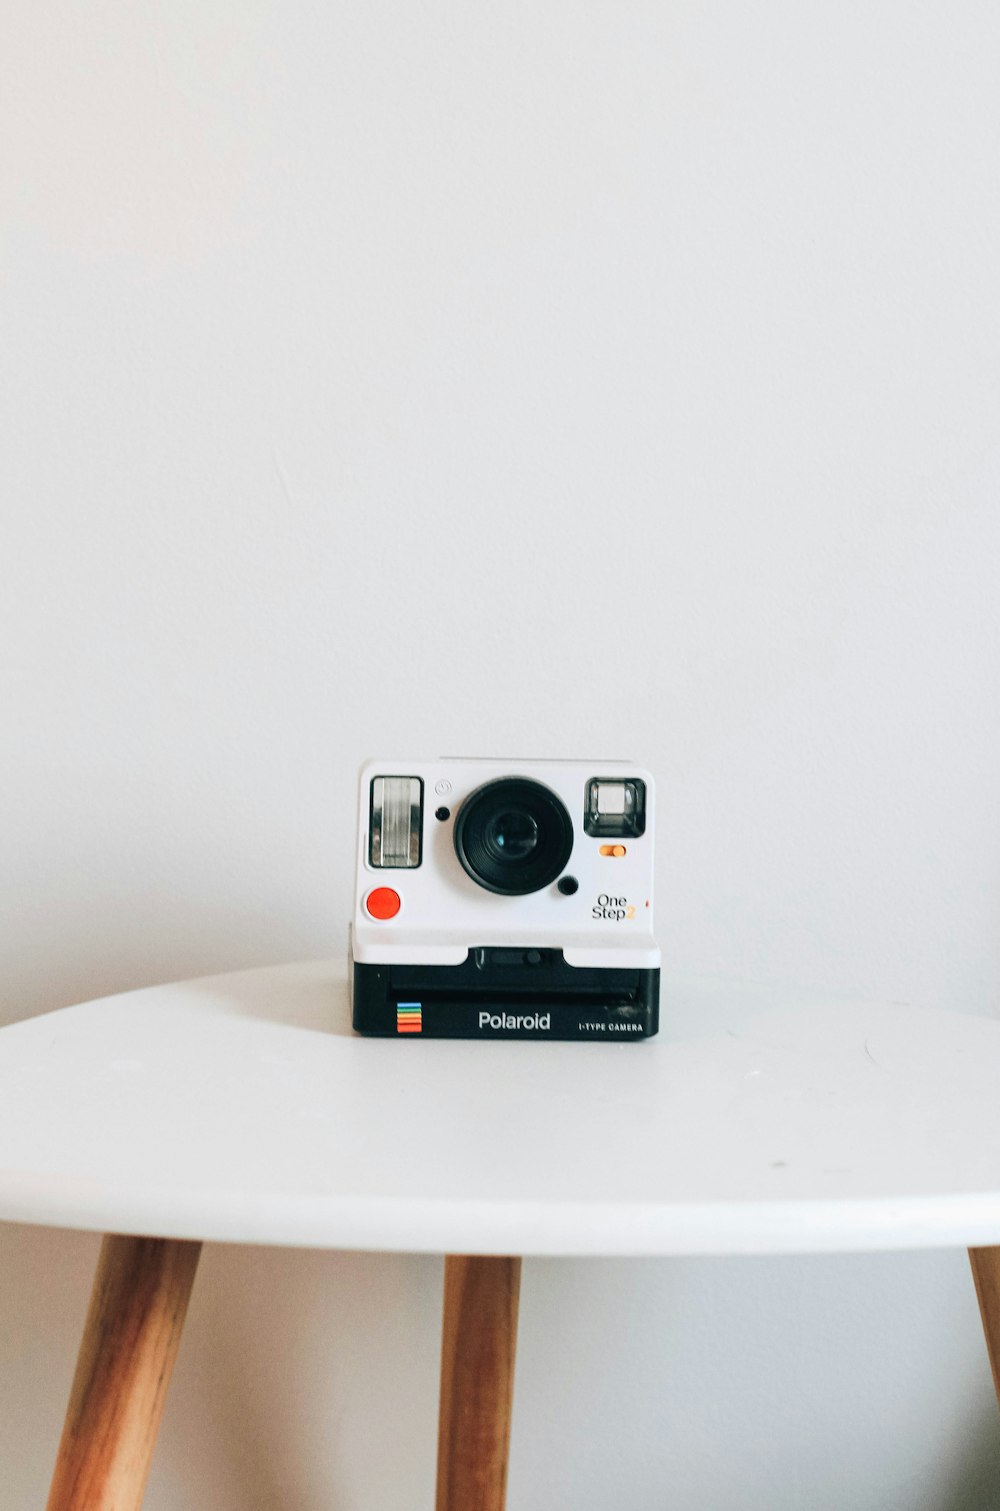 appareil photo Polaroid noir et blanc sur la table du dessus